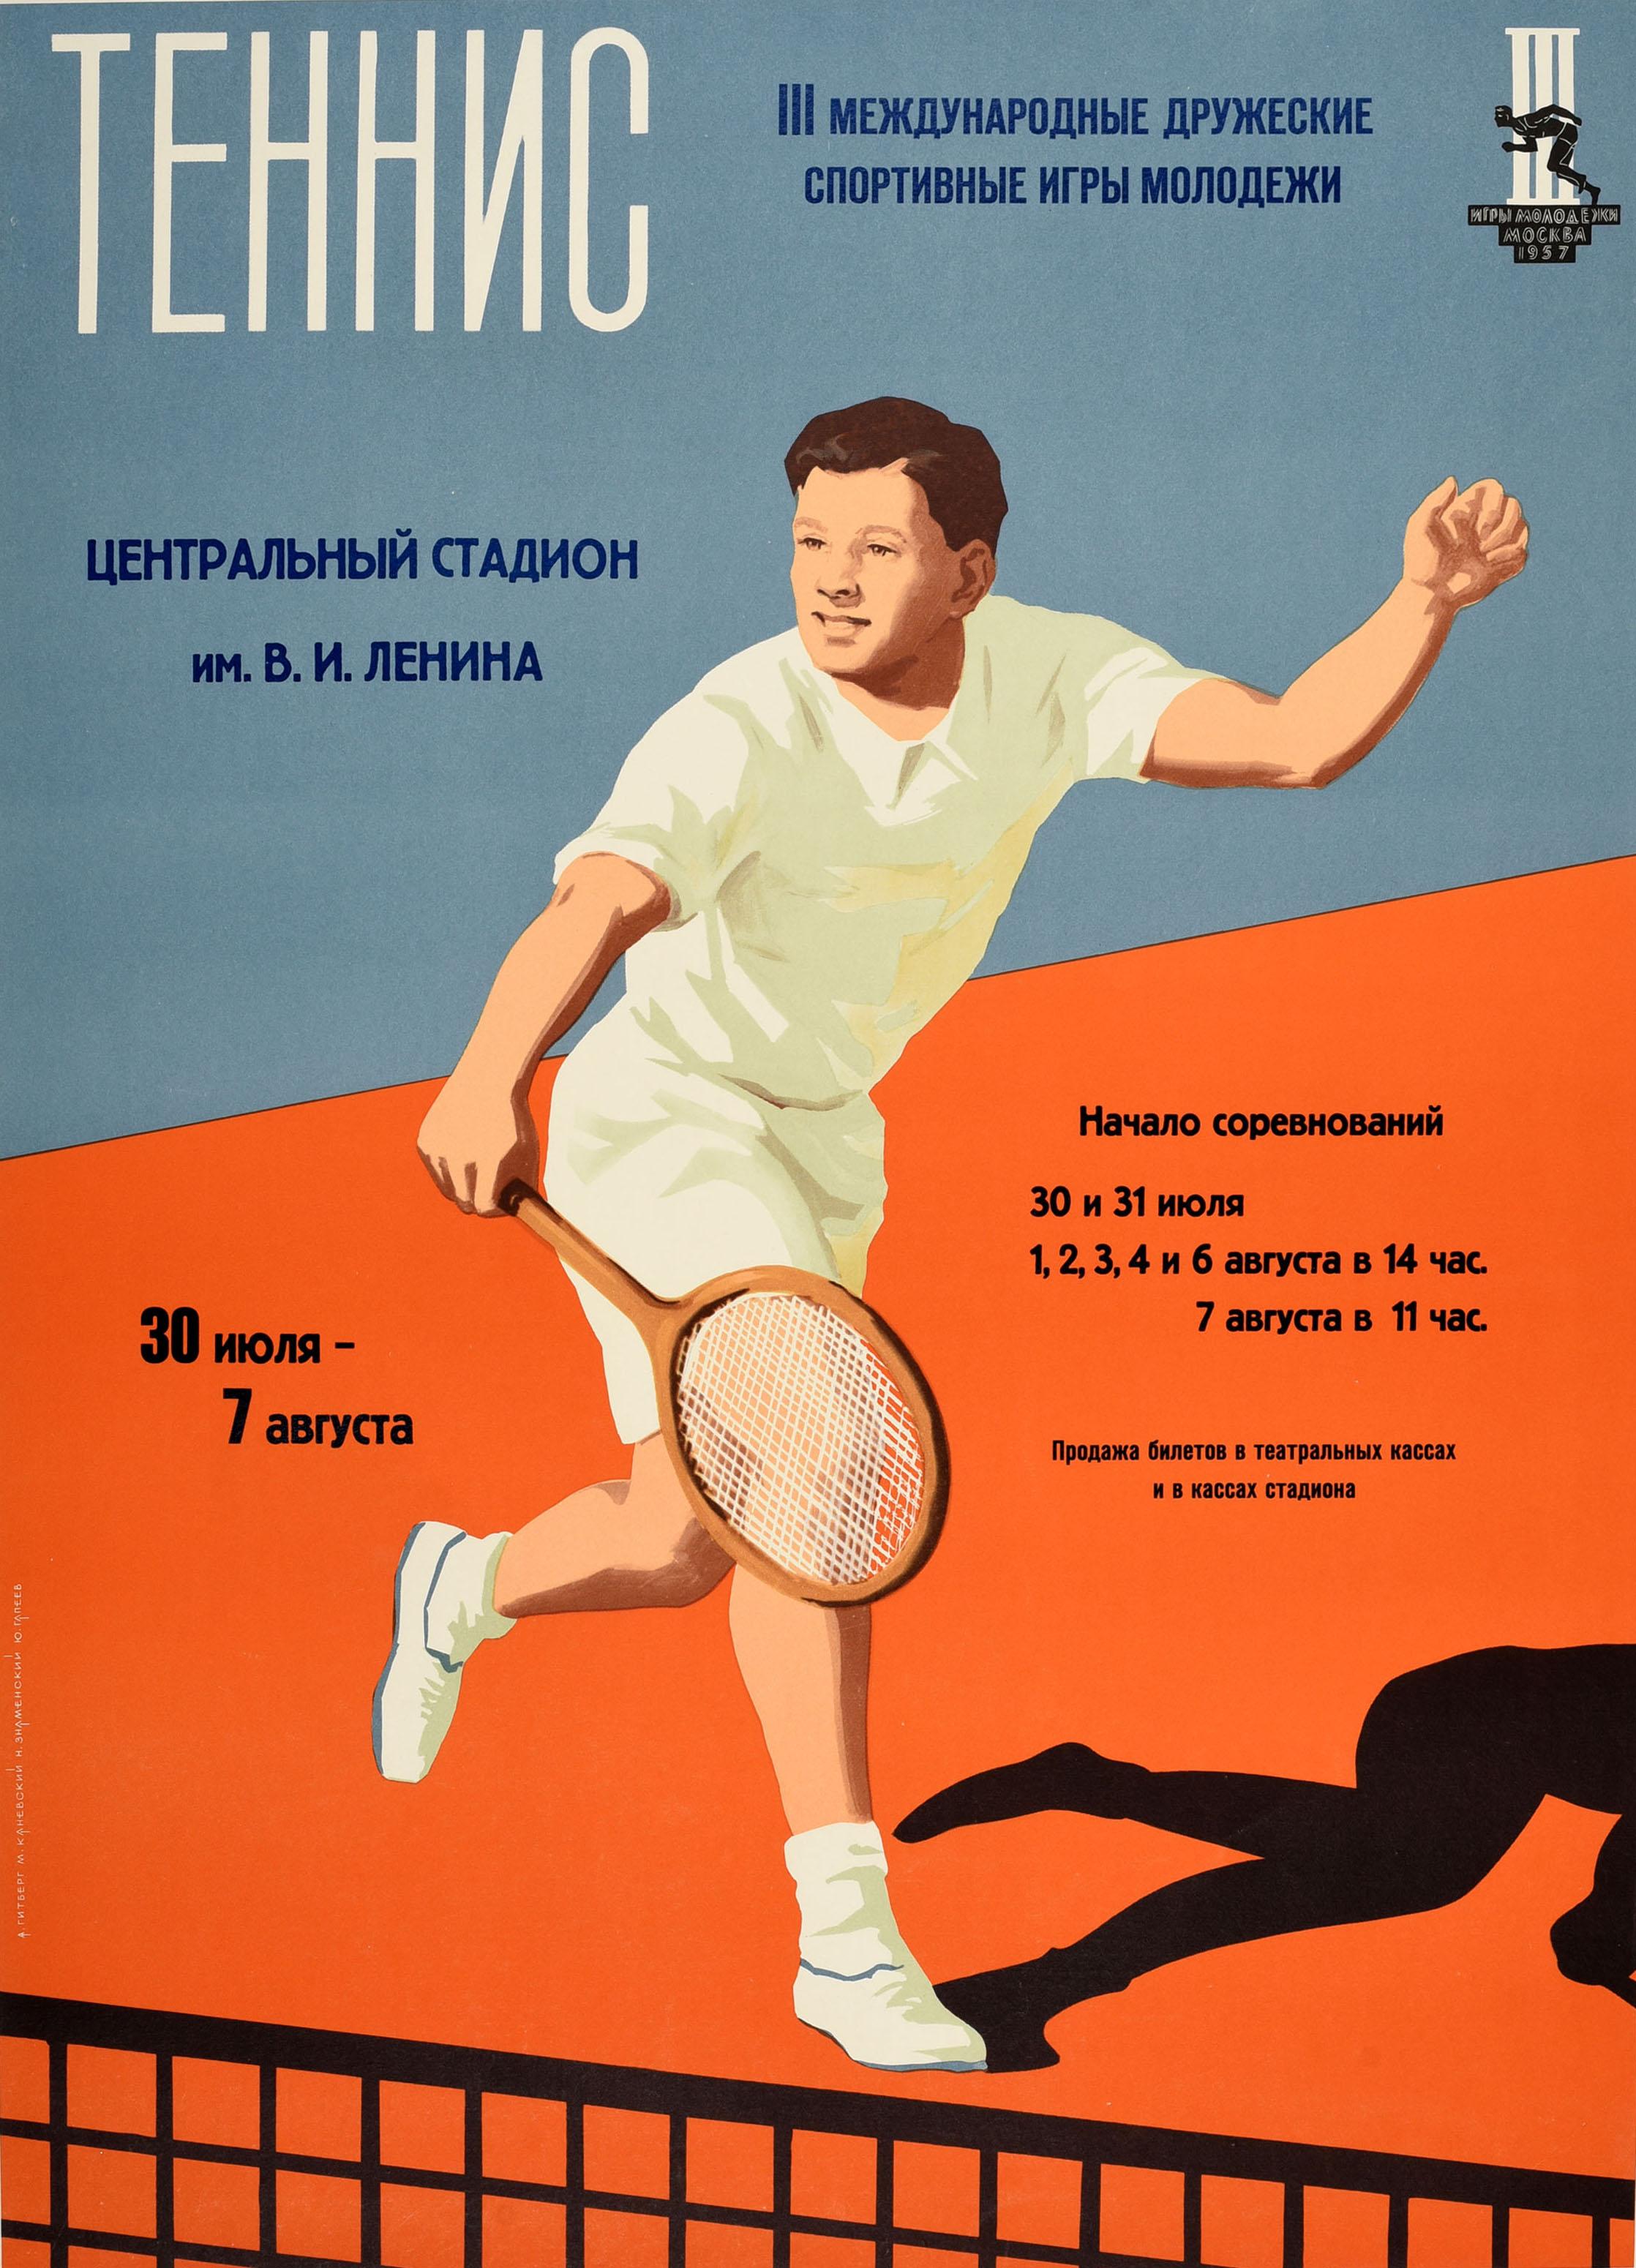 Originales sowjetisches Sportplakat für Tennis bei den 3. internationalen freundschaftlichen Jugendsportspielen, die vom 30. Juli bis 7. August im nach Wladimir Lenin benannten Zentralstadion stattfanden. Das Plakat zeigt einen jungen Mann in weißem